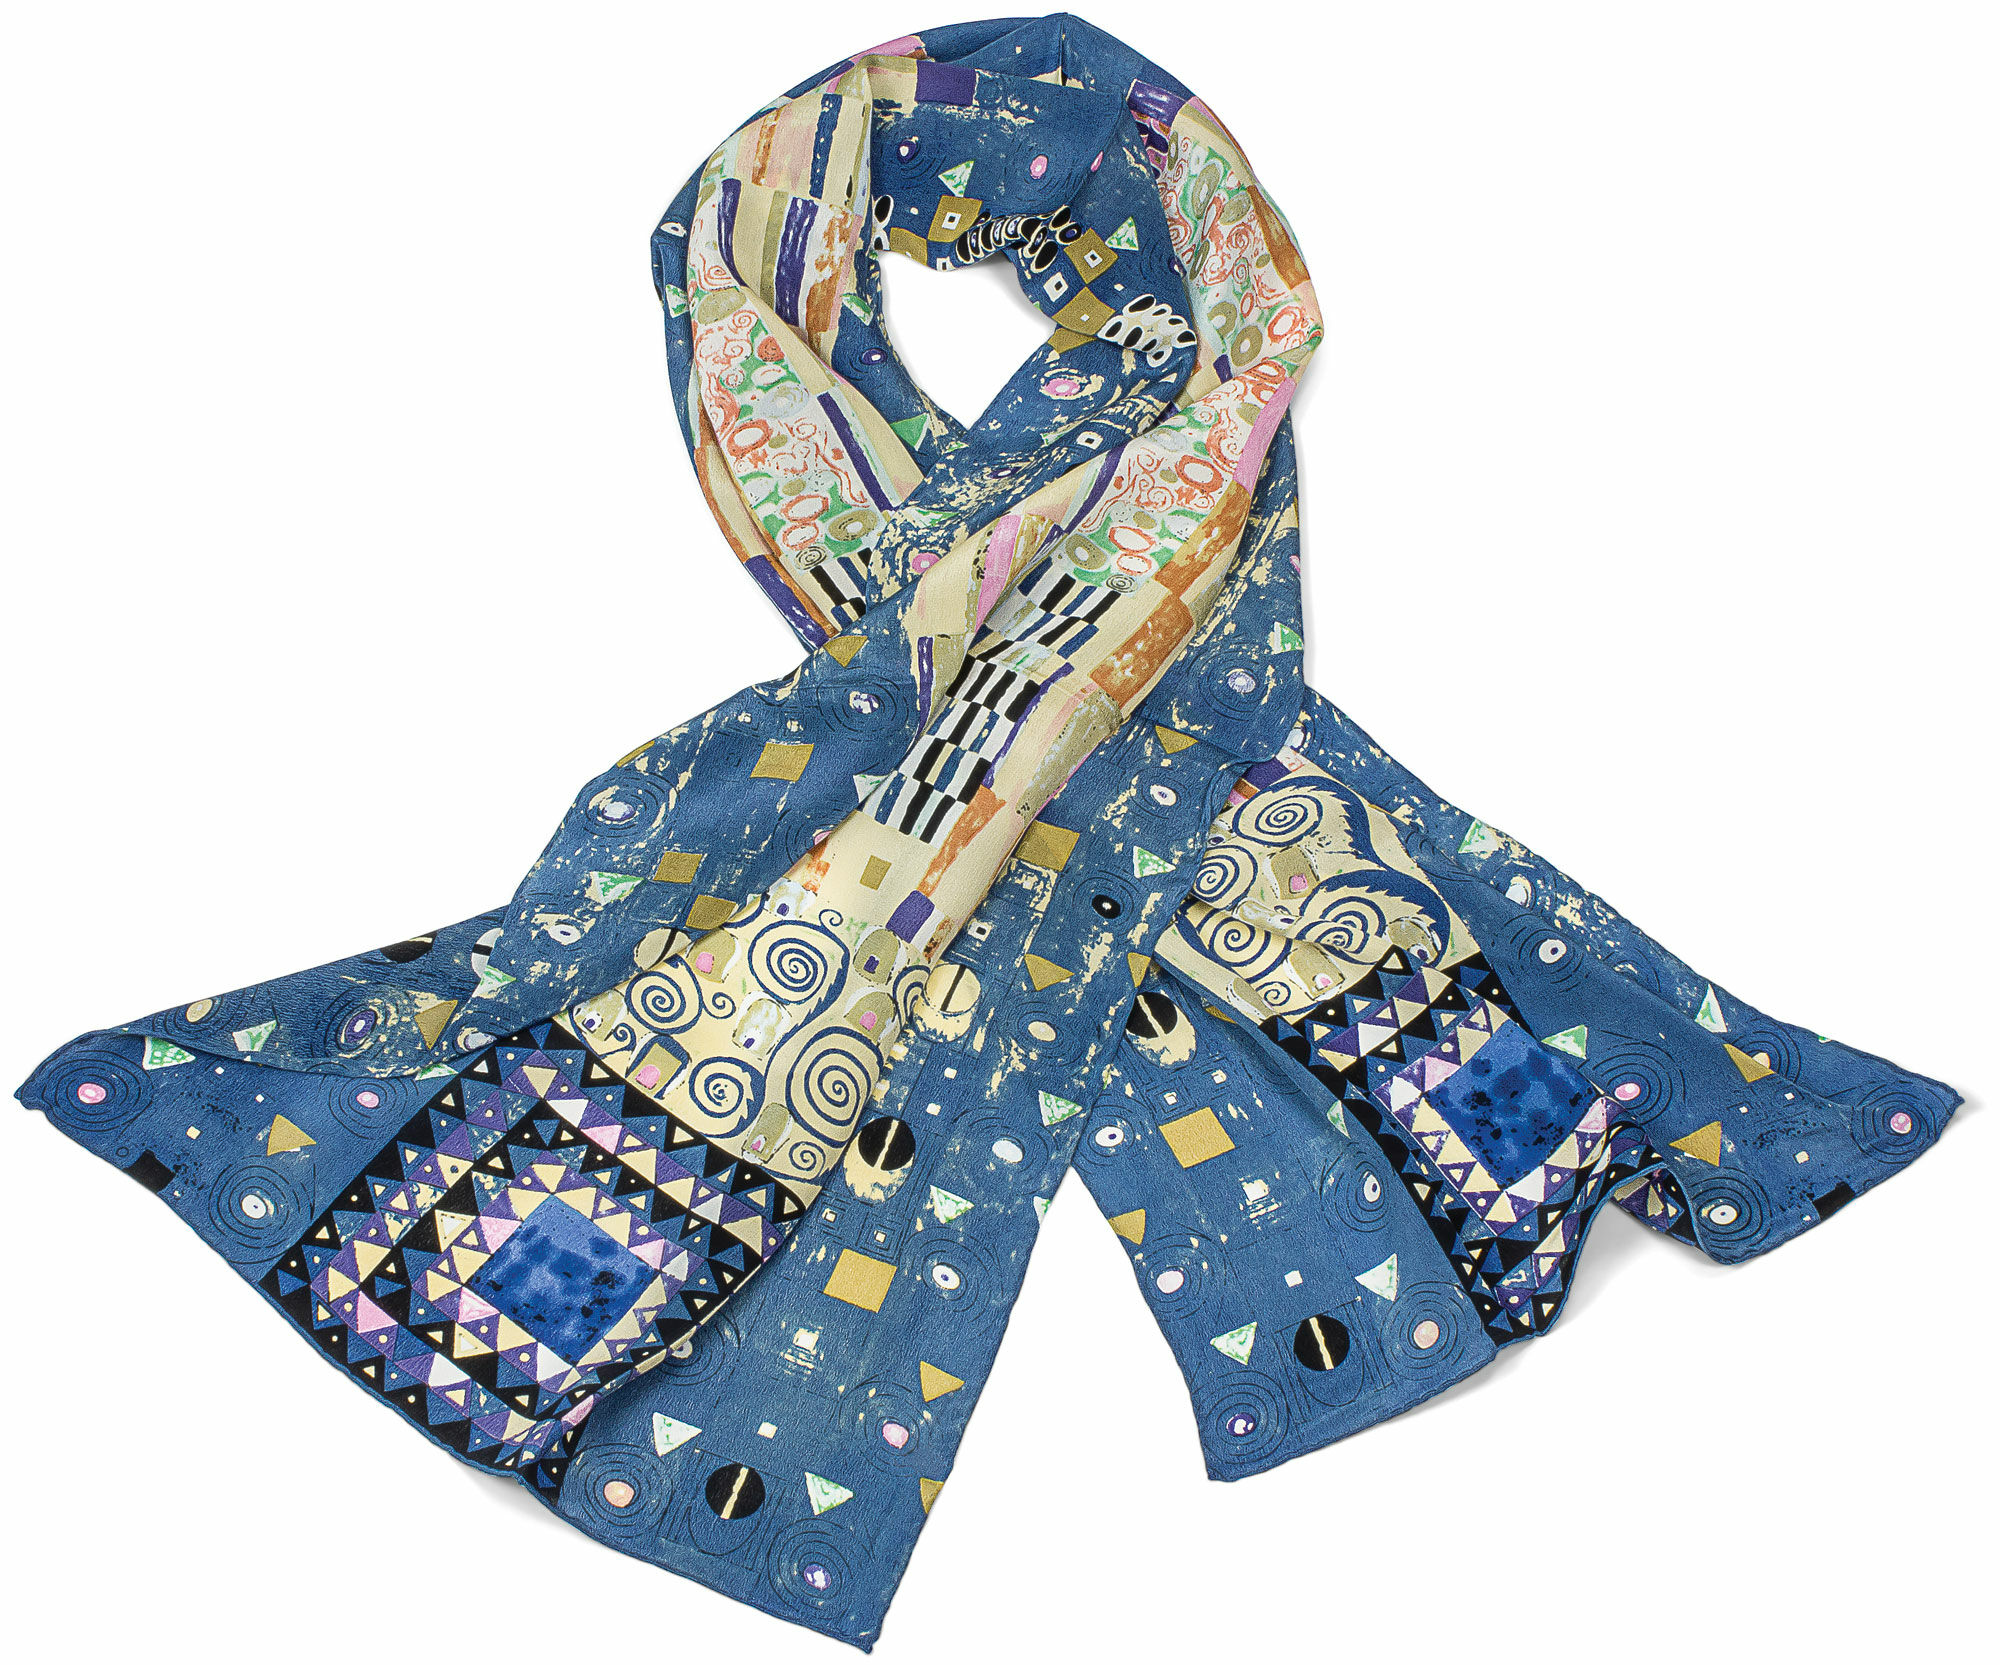 Zijden sjaal "Stoclet Frieze" von Gustav Klimt